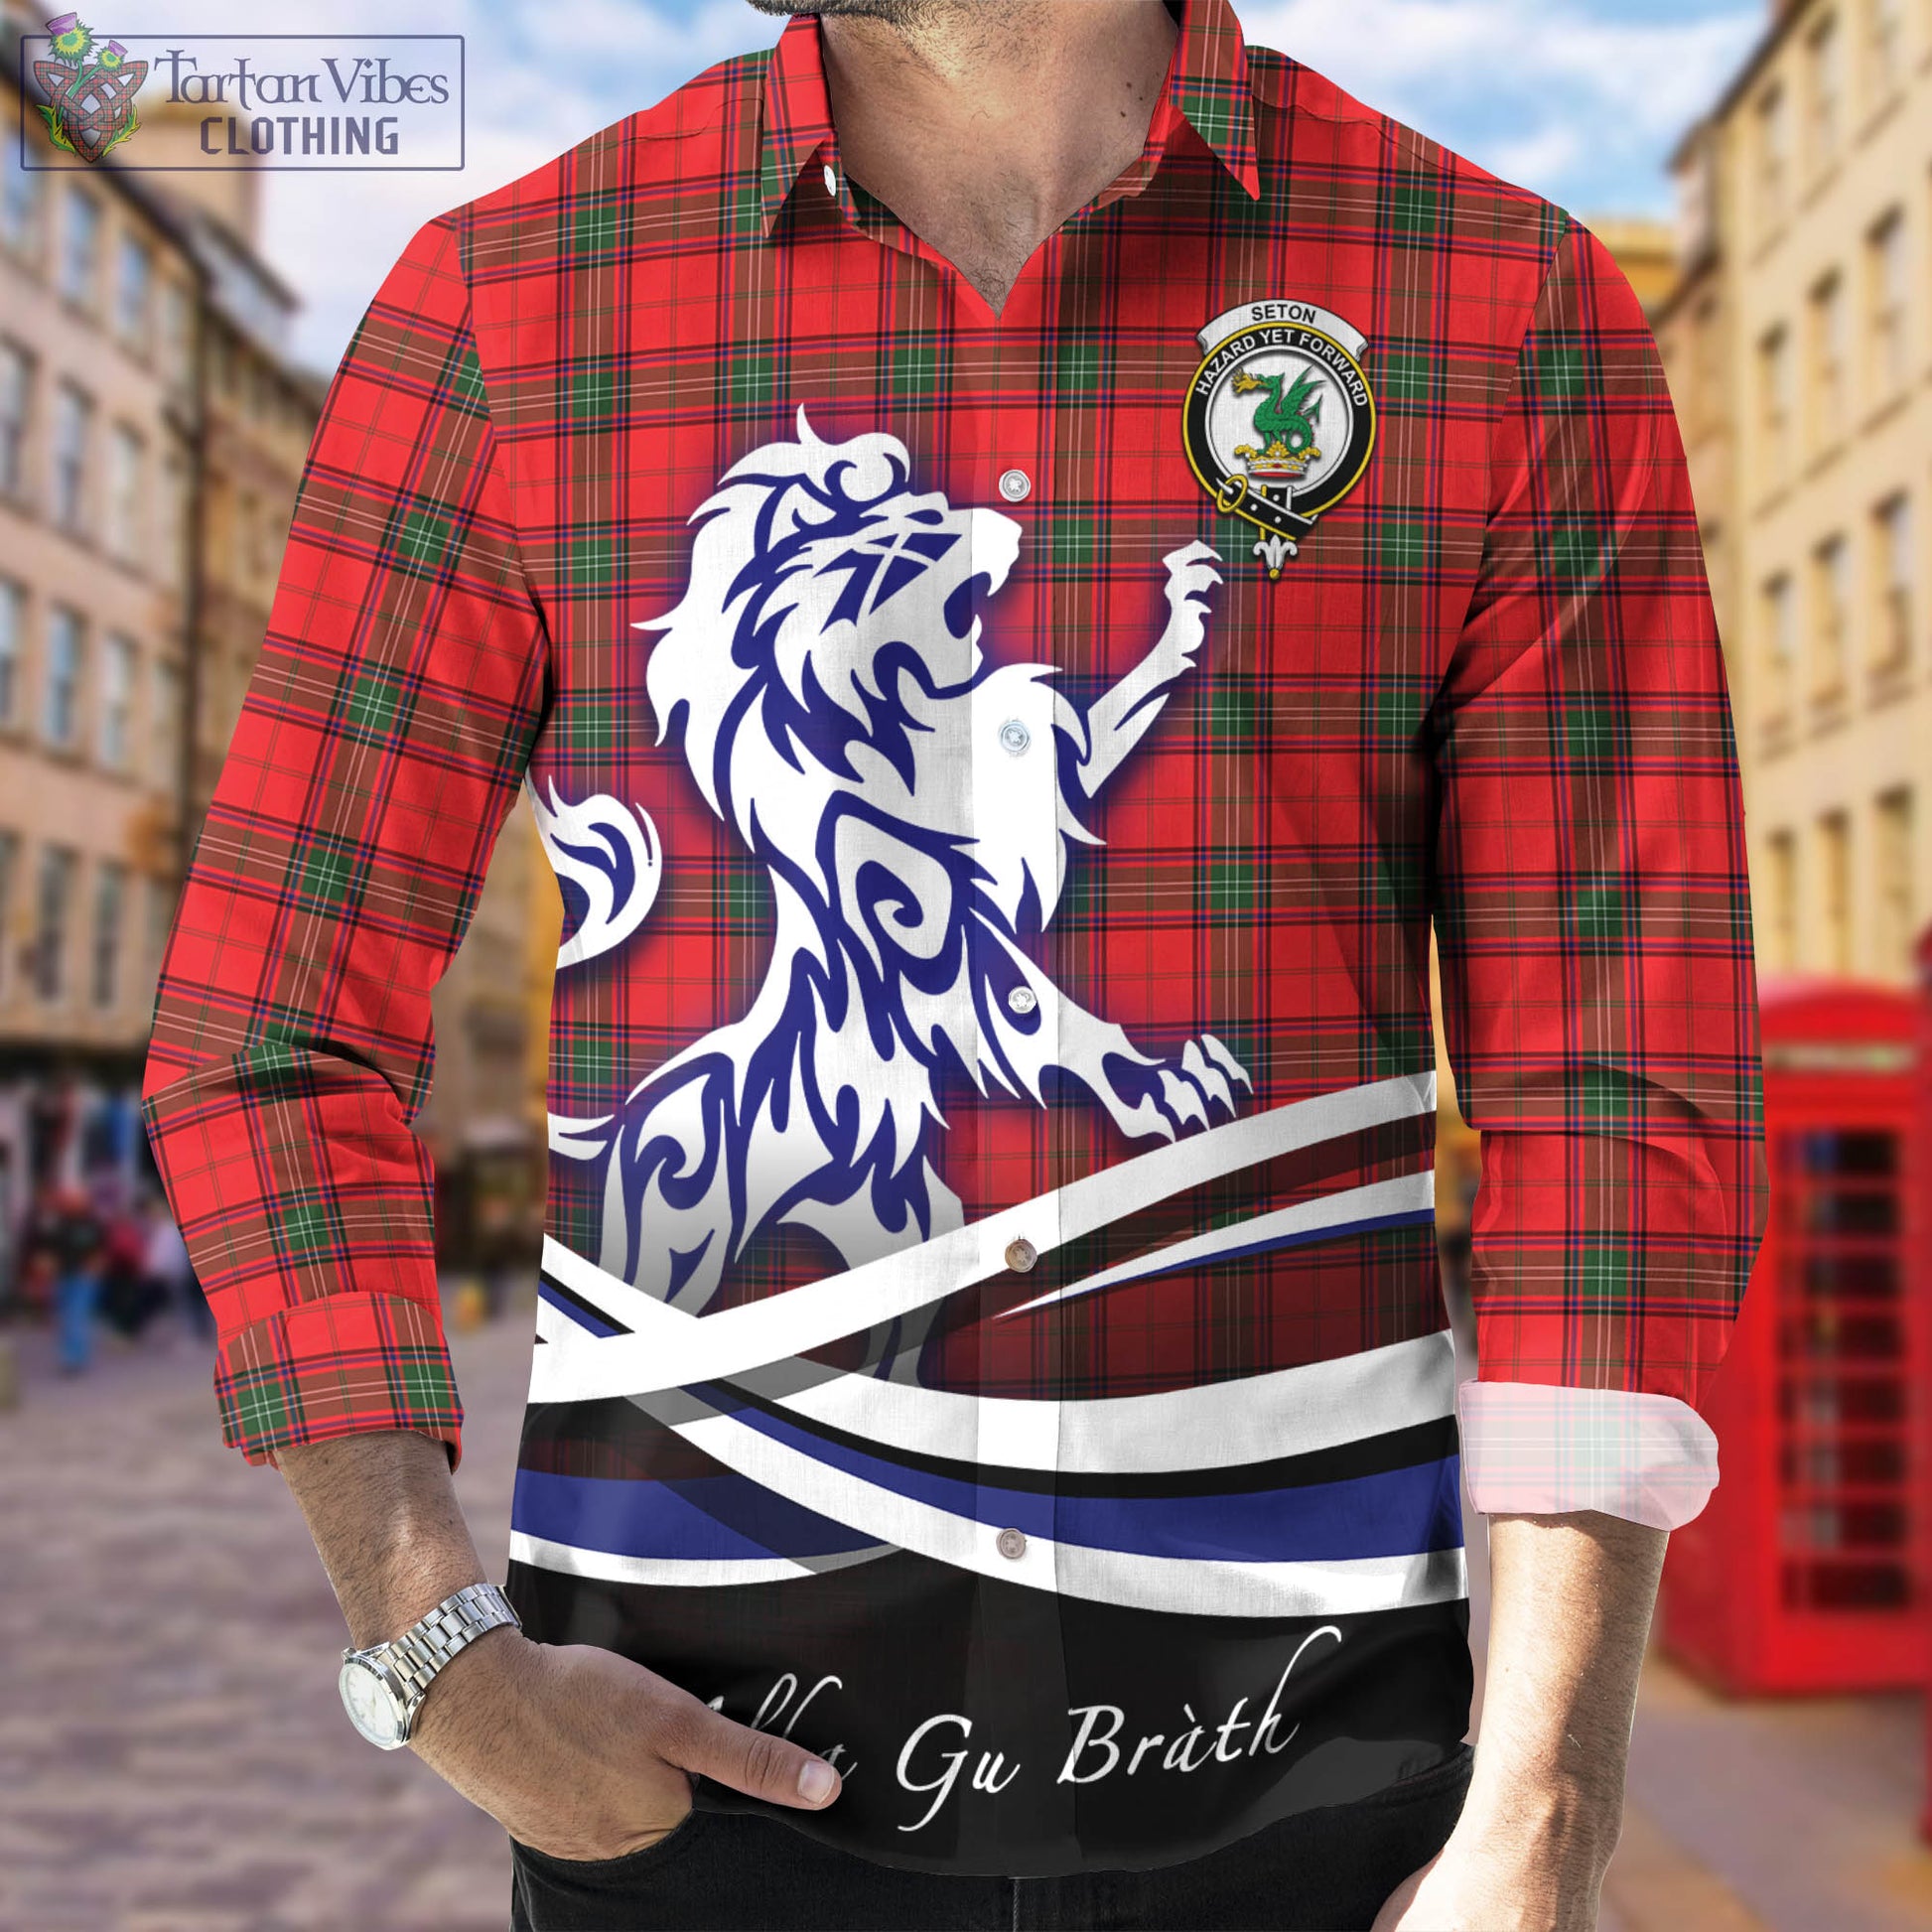 seton-modern-tartan-long-sleeve-button-up-shirt-with-alba-gu-brath-regal-lion-emblem